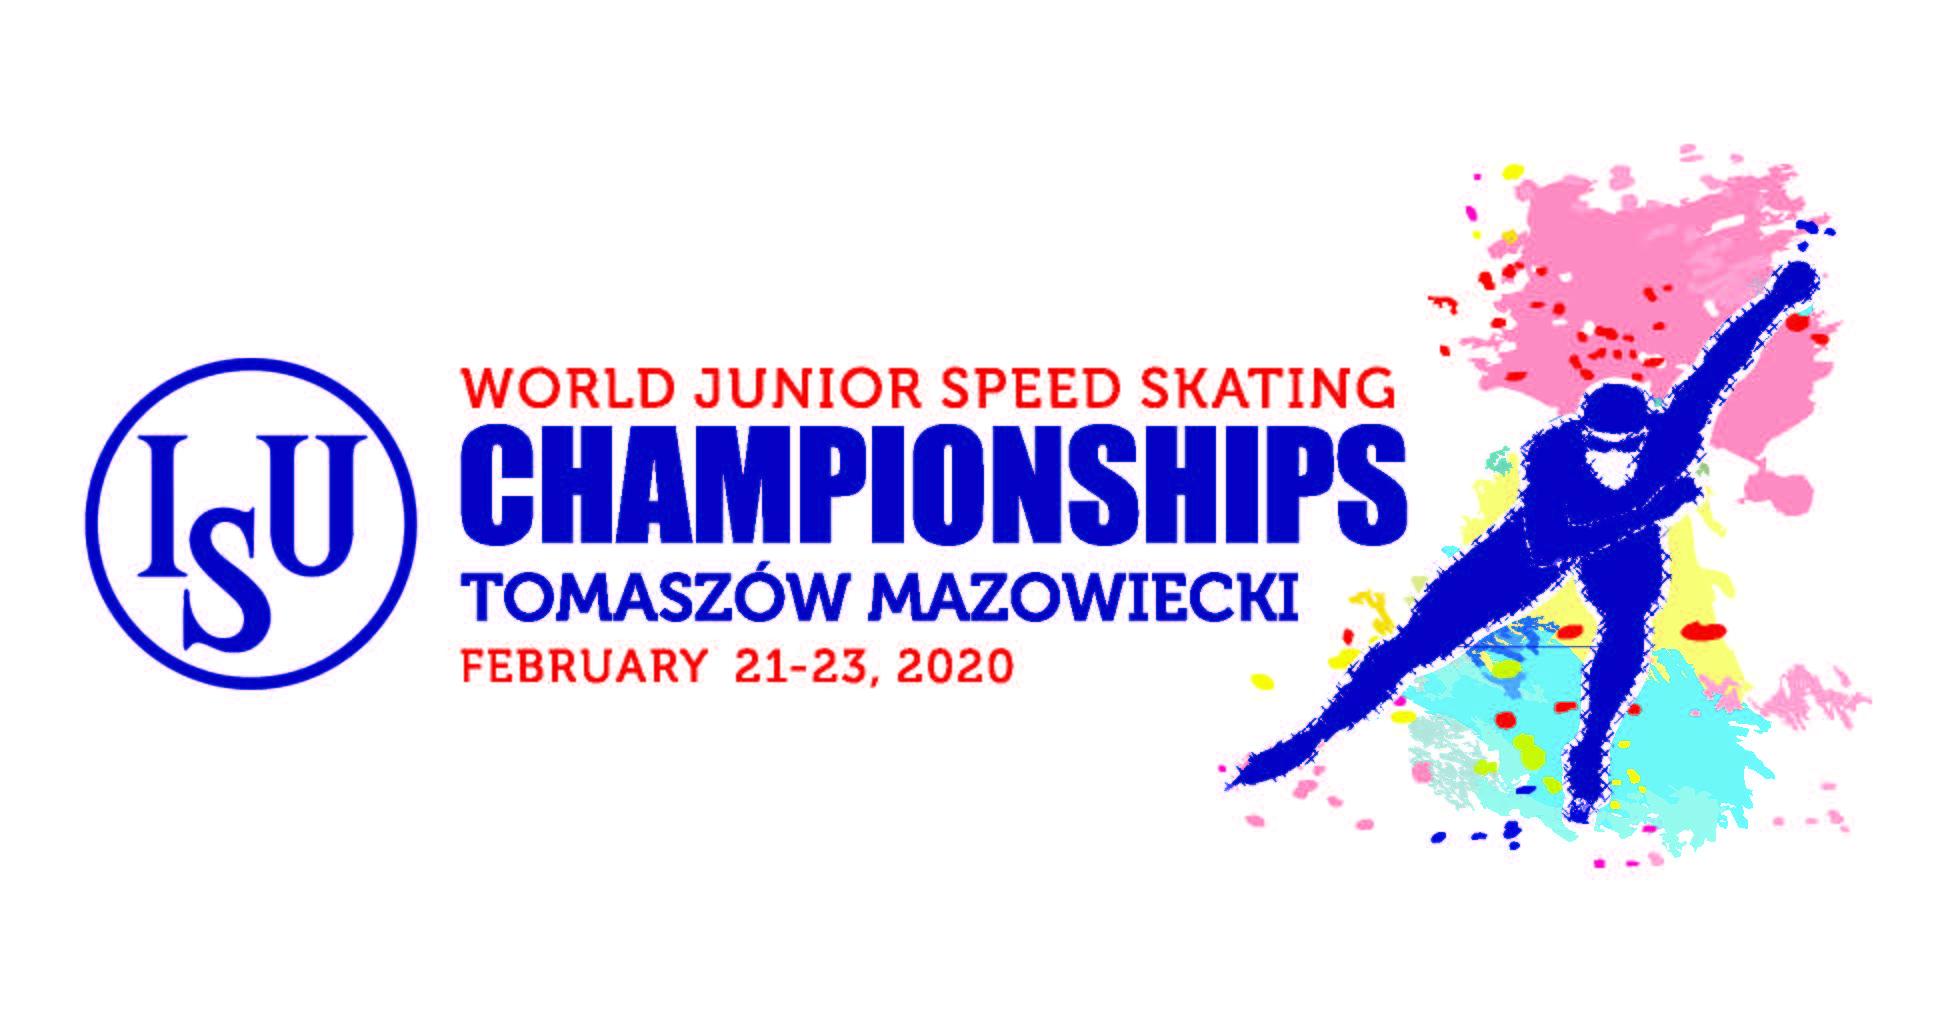 World Junior Speed Skating Championships